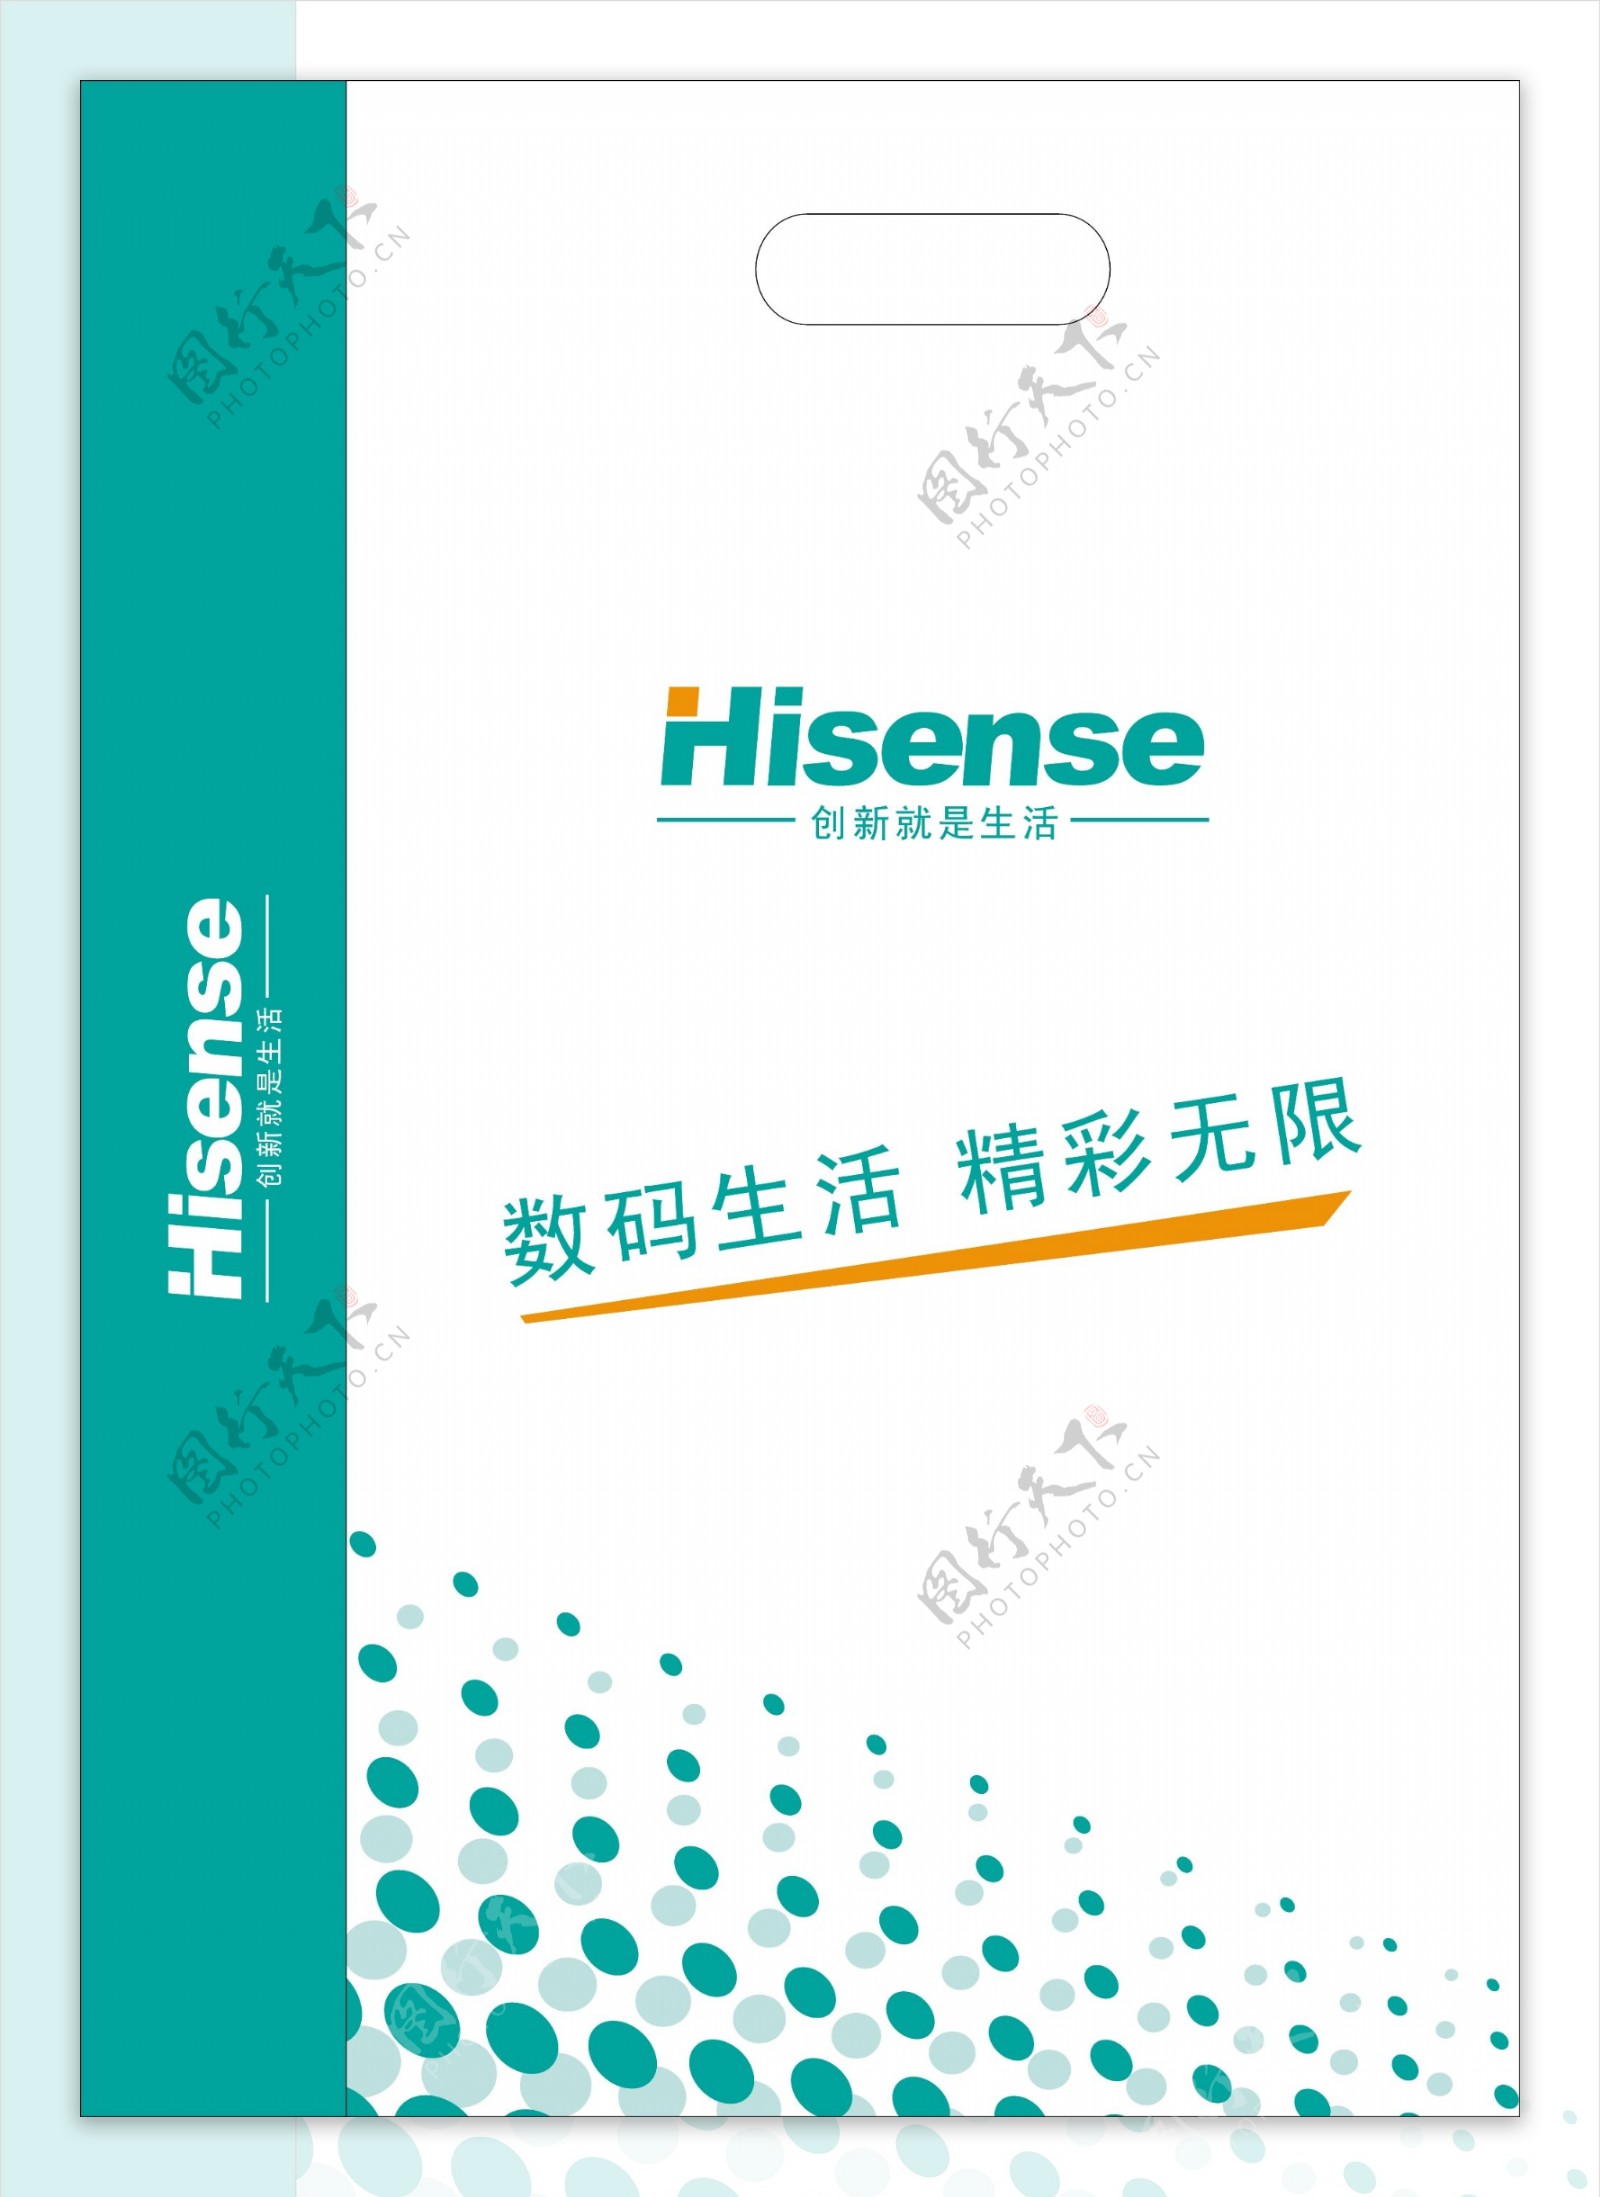 hisense数码图片